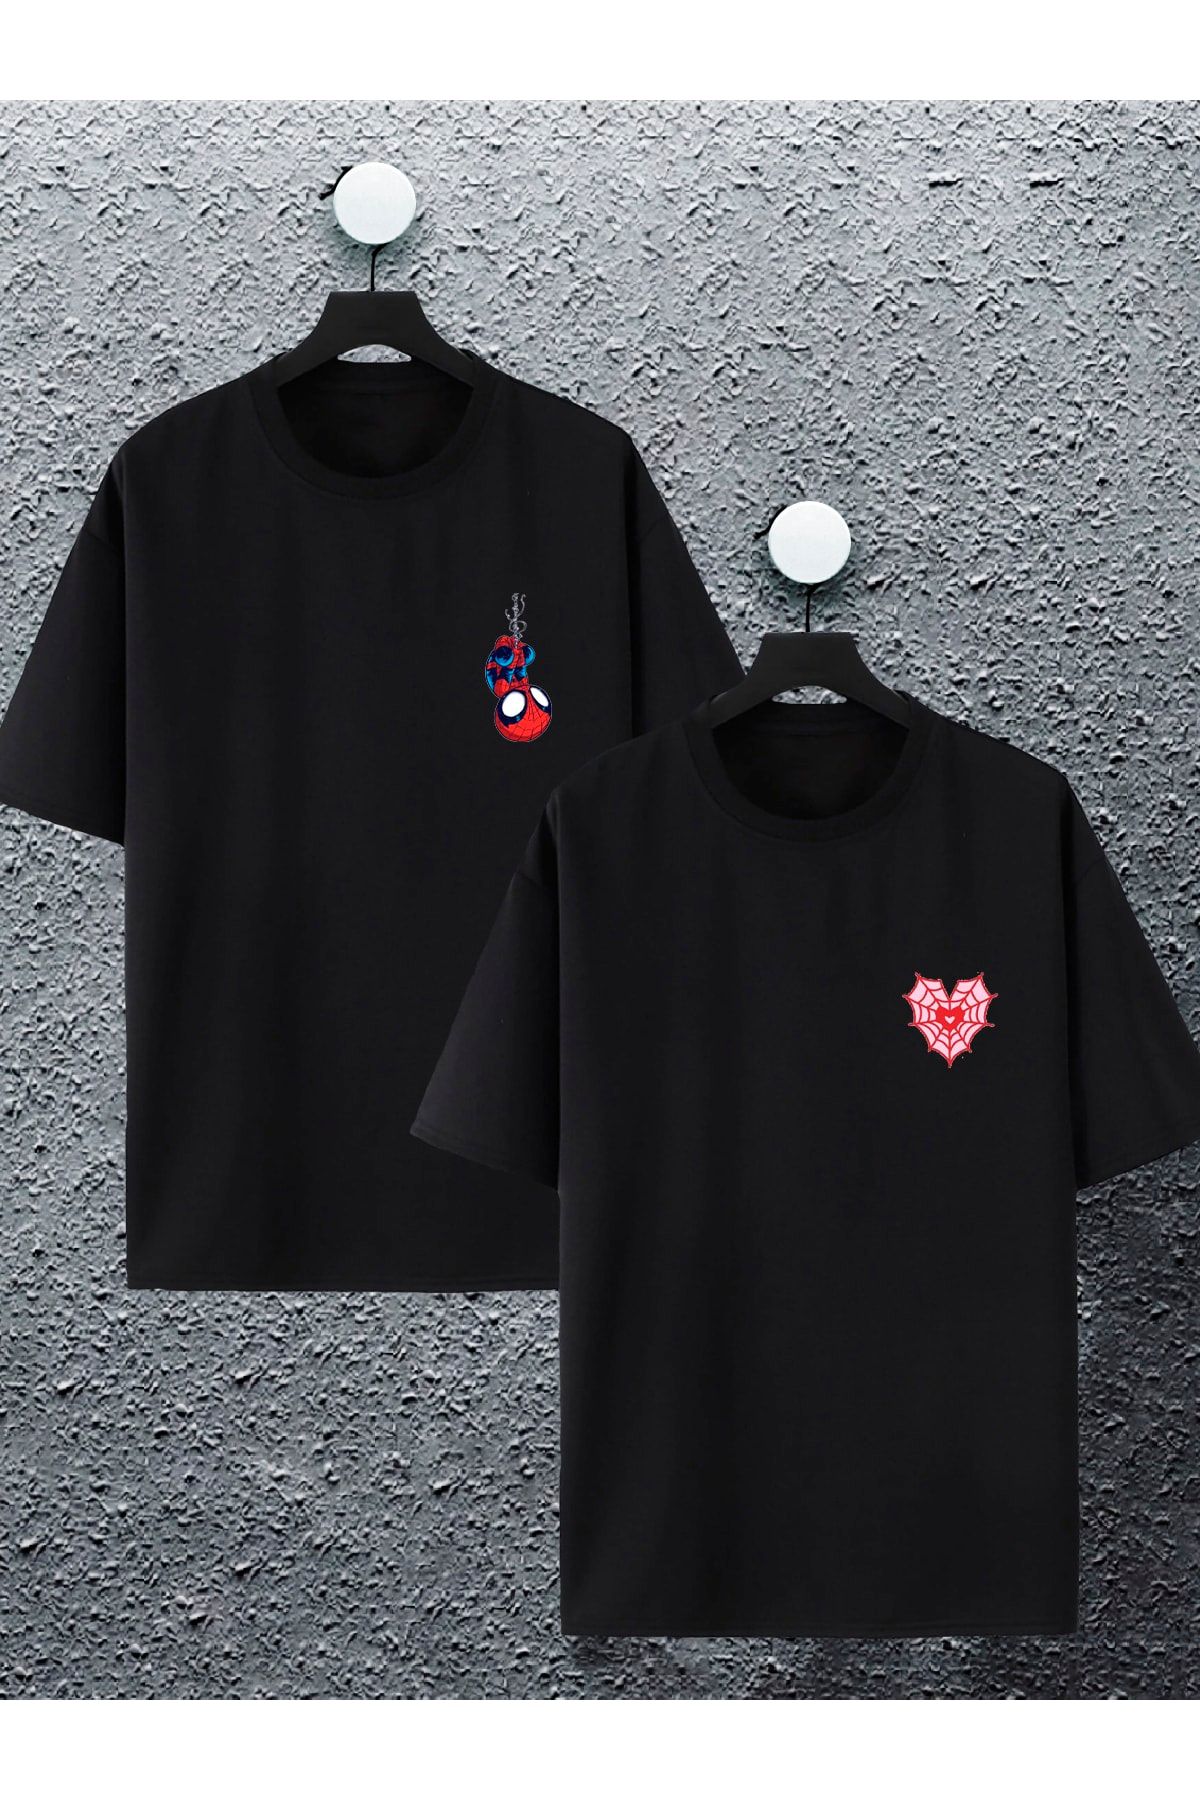 Jobia Outdoors Kadın Erkek Spiderman Ağ Kalp Baskılı Sevgili Çift Kombini Tasarım Oversize T-shirt 2li Set